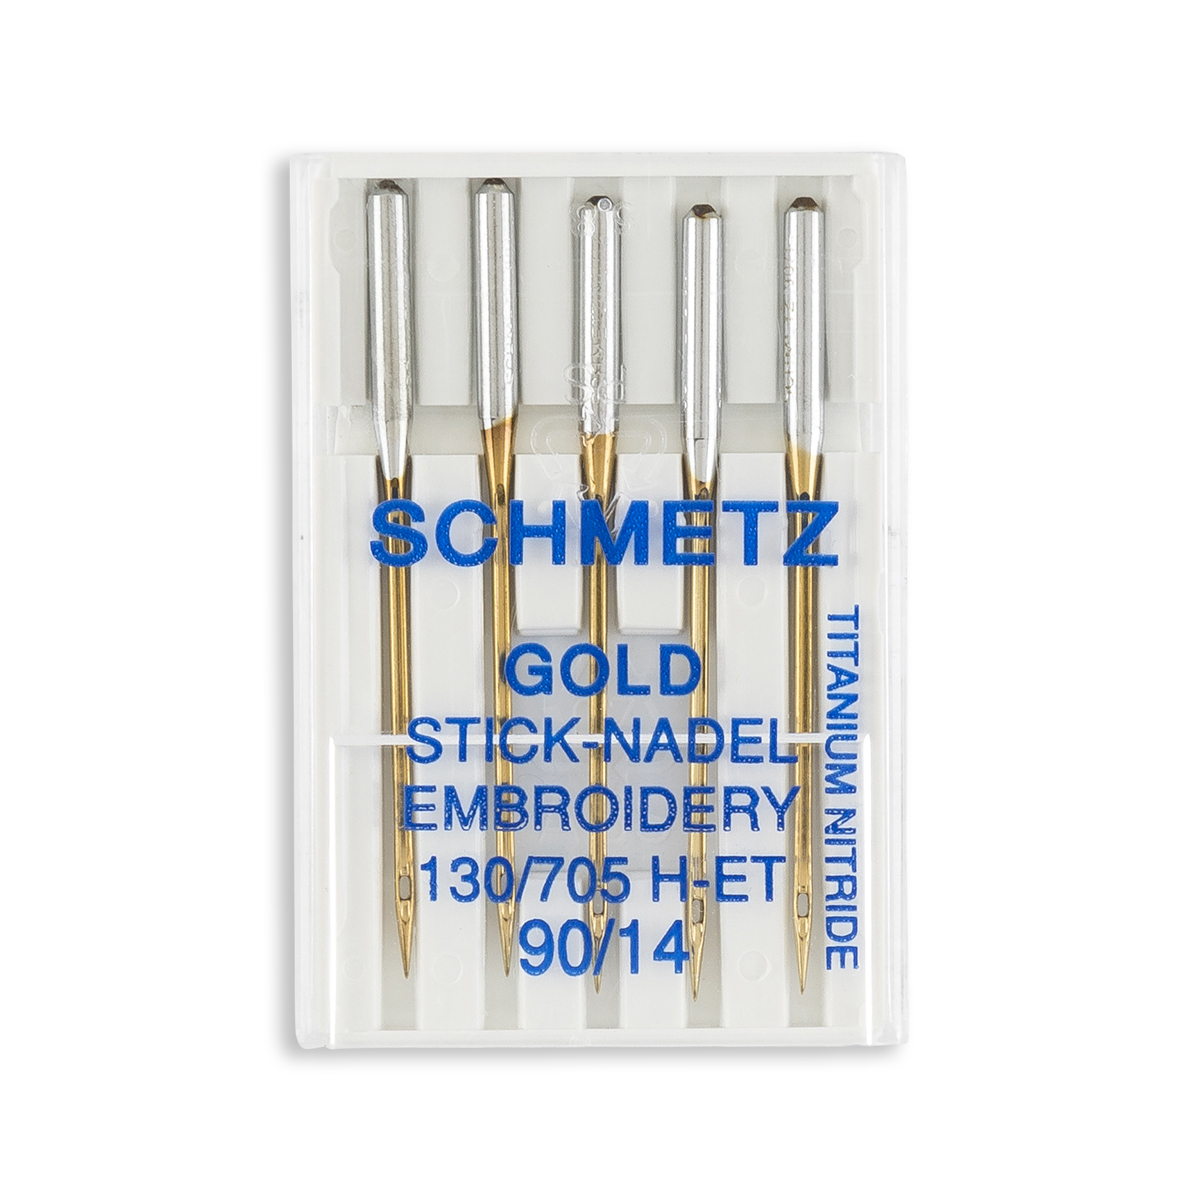 Schmetz Quilting Home Machine Needles - Size 11 & 14 - 15x1, 130/705 H-Q -  5/Pack - WAWAK Sewing Supplies